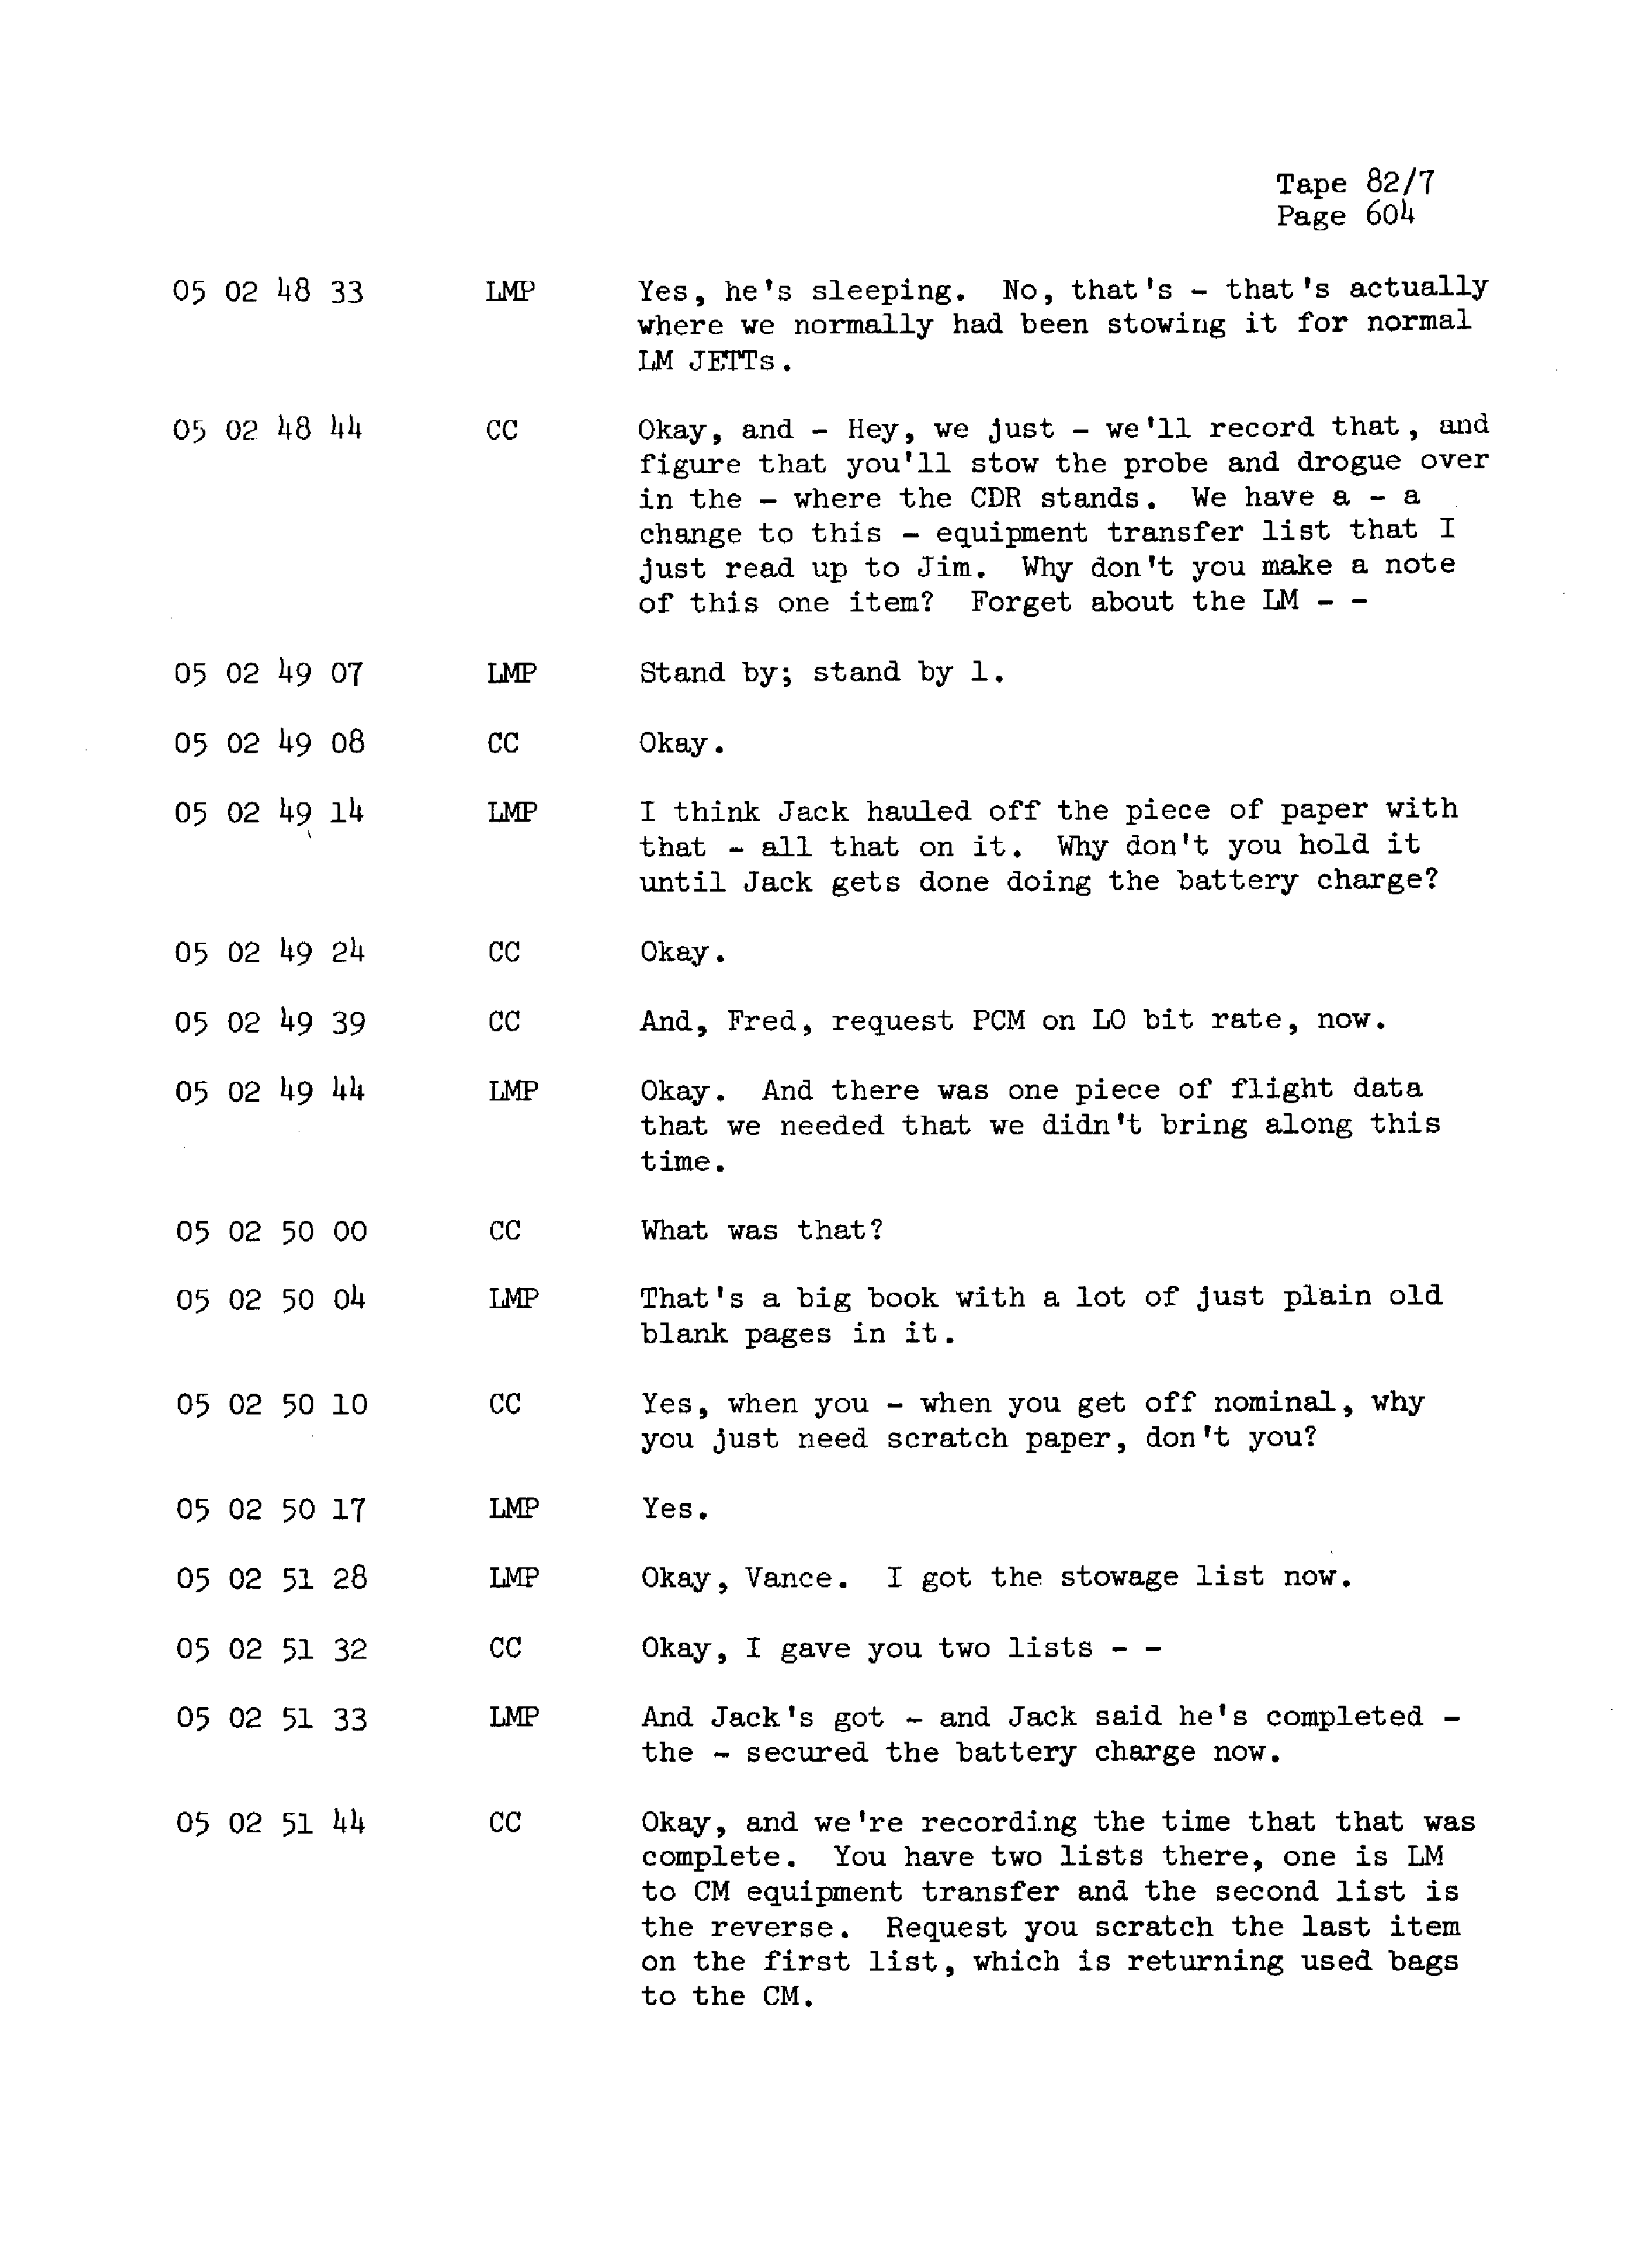 Page 611 of Apollo 13’s original transcript